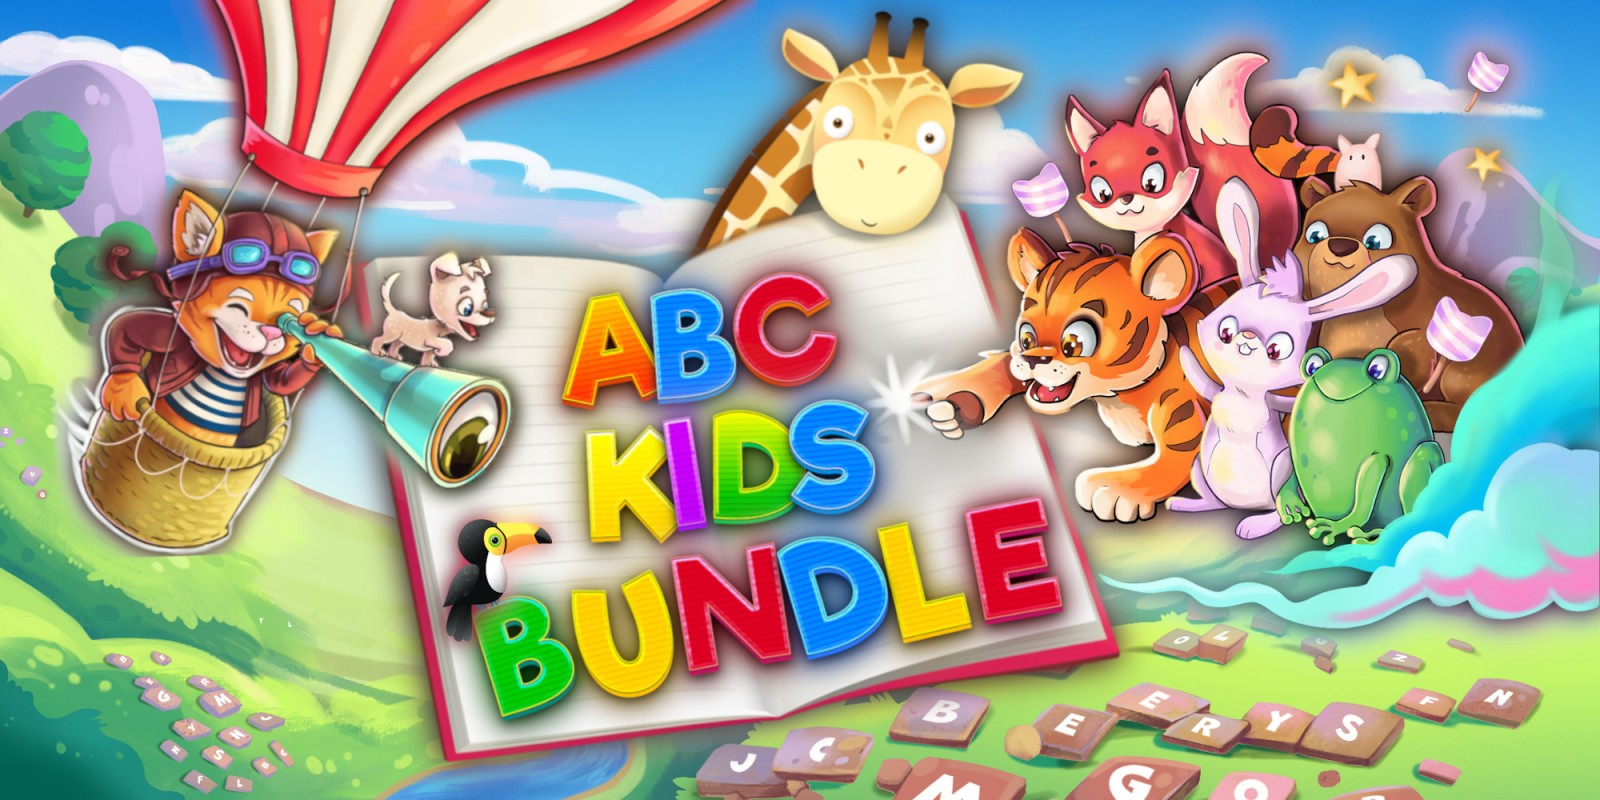 ABC Kids Bundle